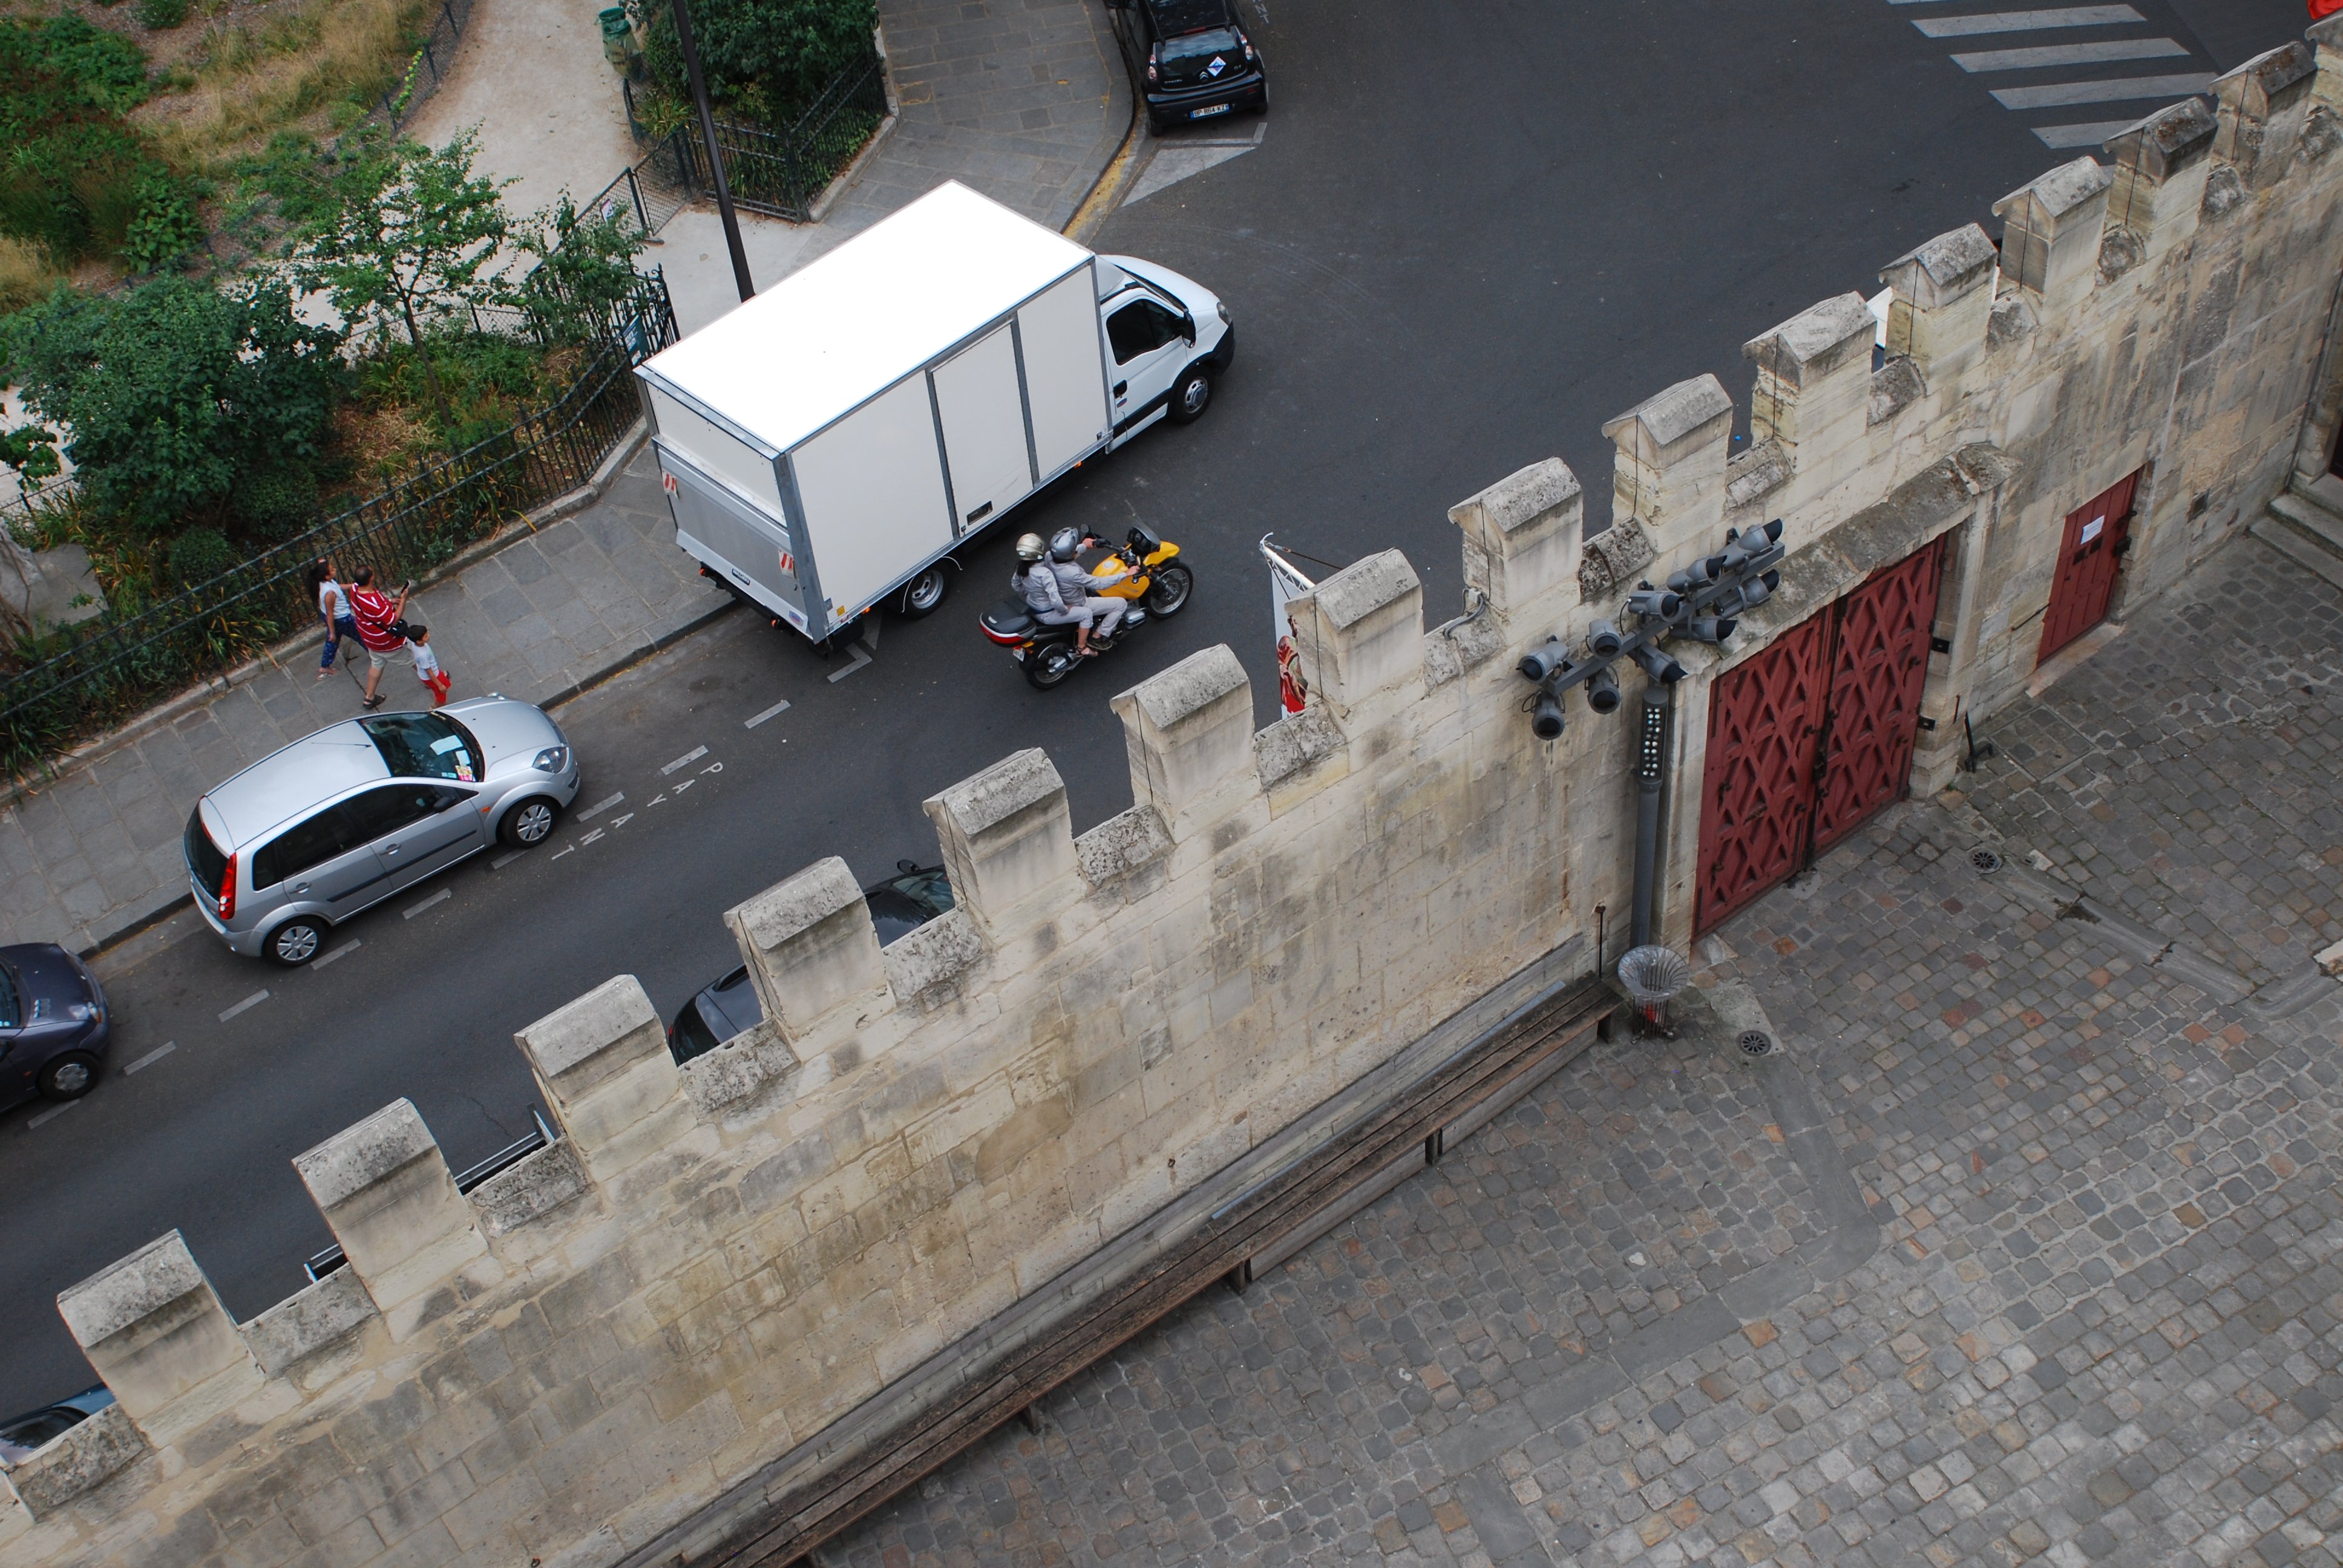 Photo délimitée en deux par le mur de la cour de l’hôtel de Cluny. En haut à gauche, la rue, avec des véhicules stationnés, une moto jaune sur la chaussée et des passants sur le trottoir. En bas à droite, le mur lui-même, crénelé et percé de deux portes anciennes couleur lie-de-vin, et la cour pavée.